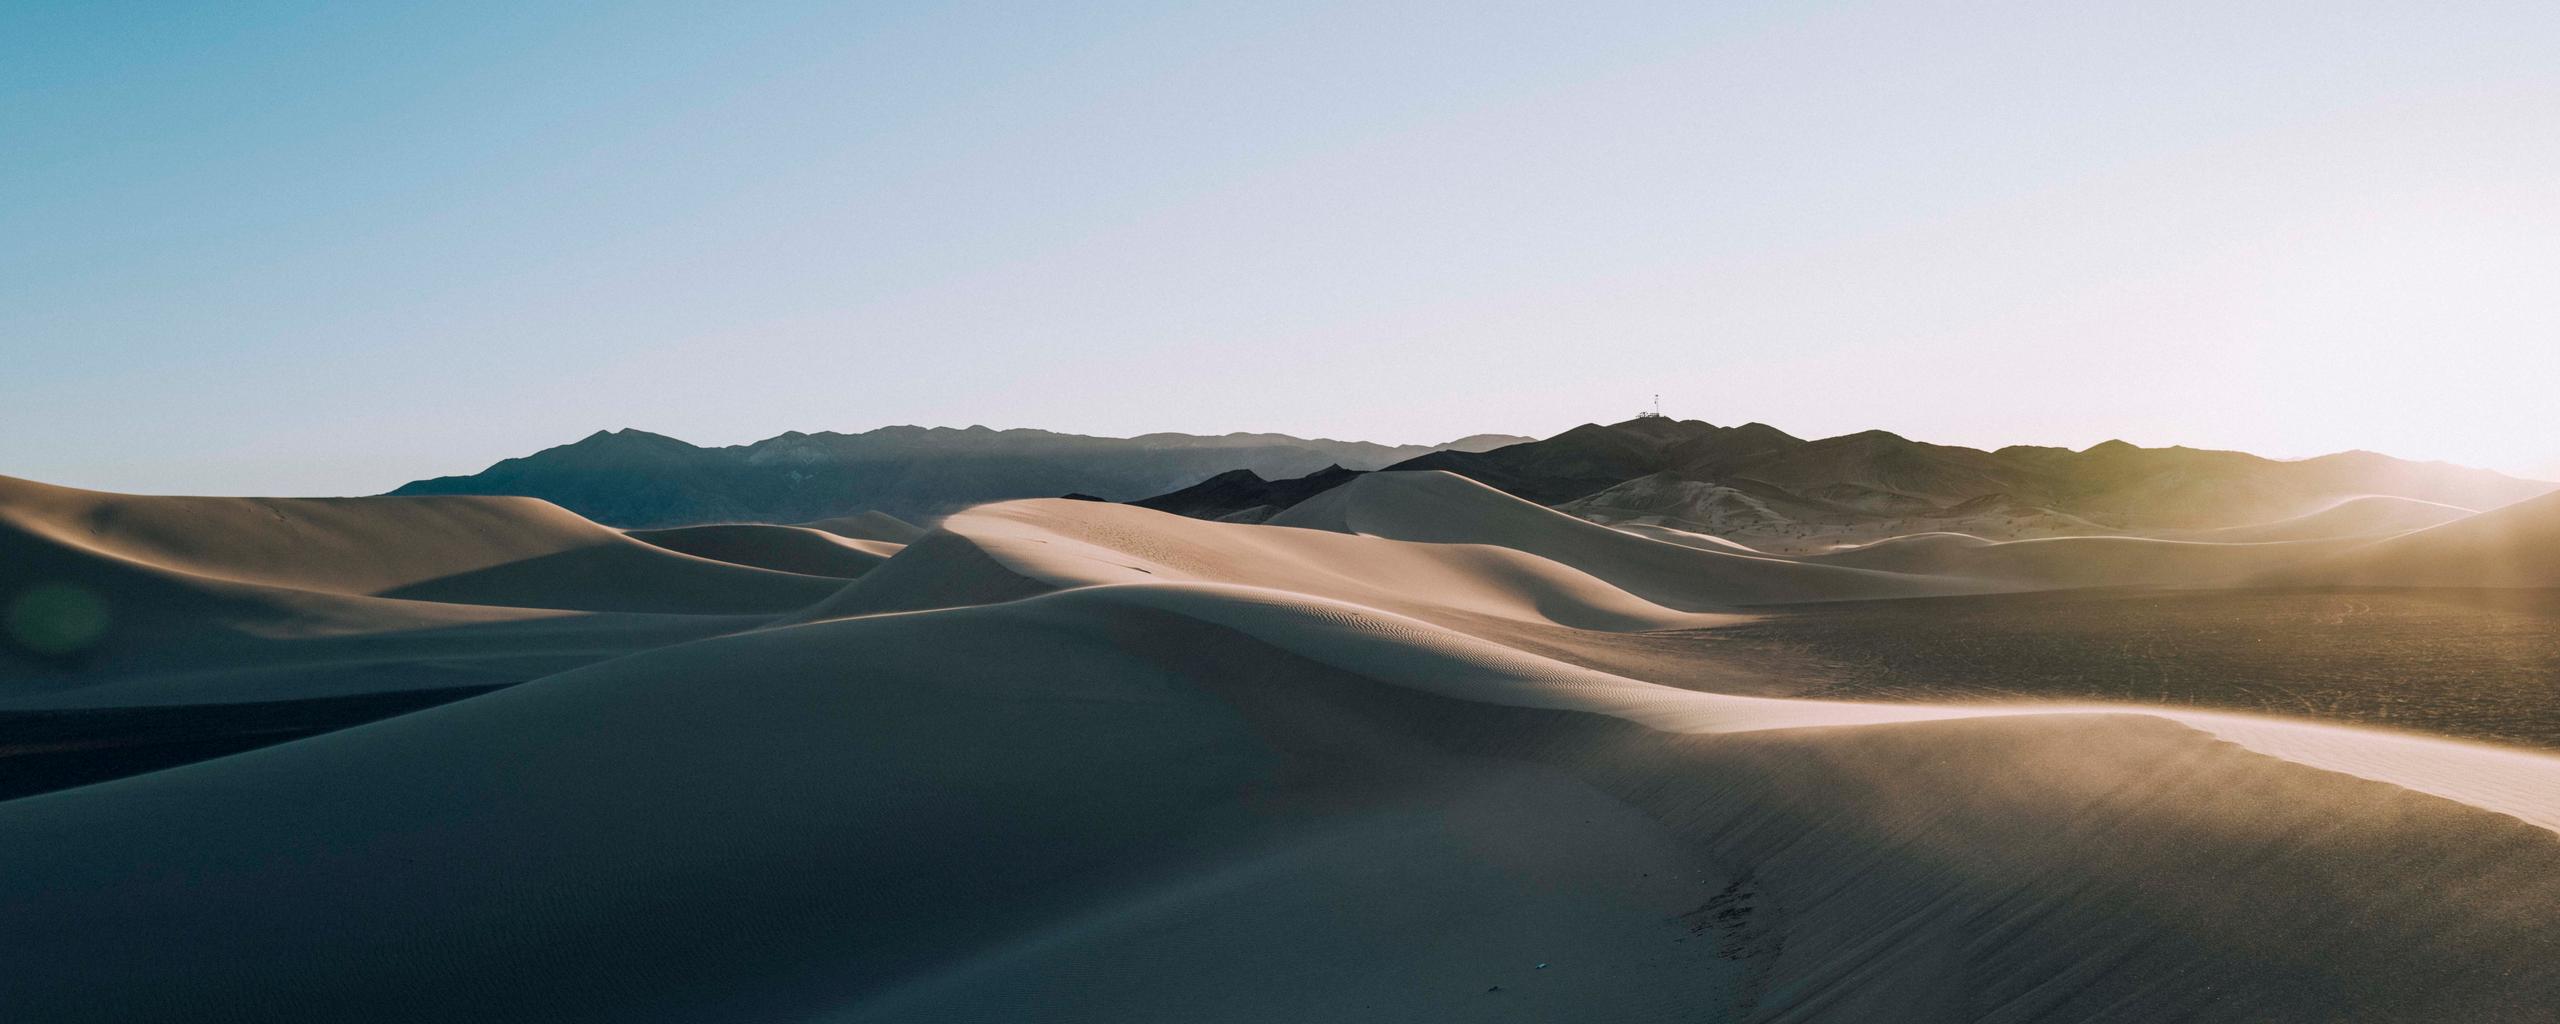 Sunset over landscape of desert dunes